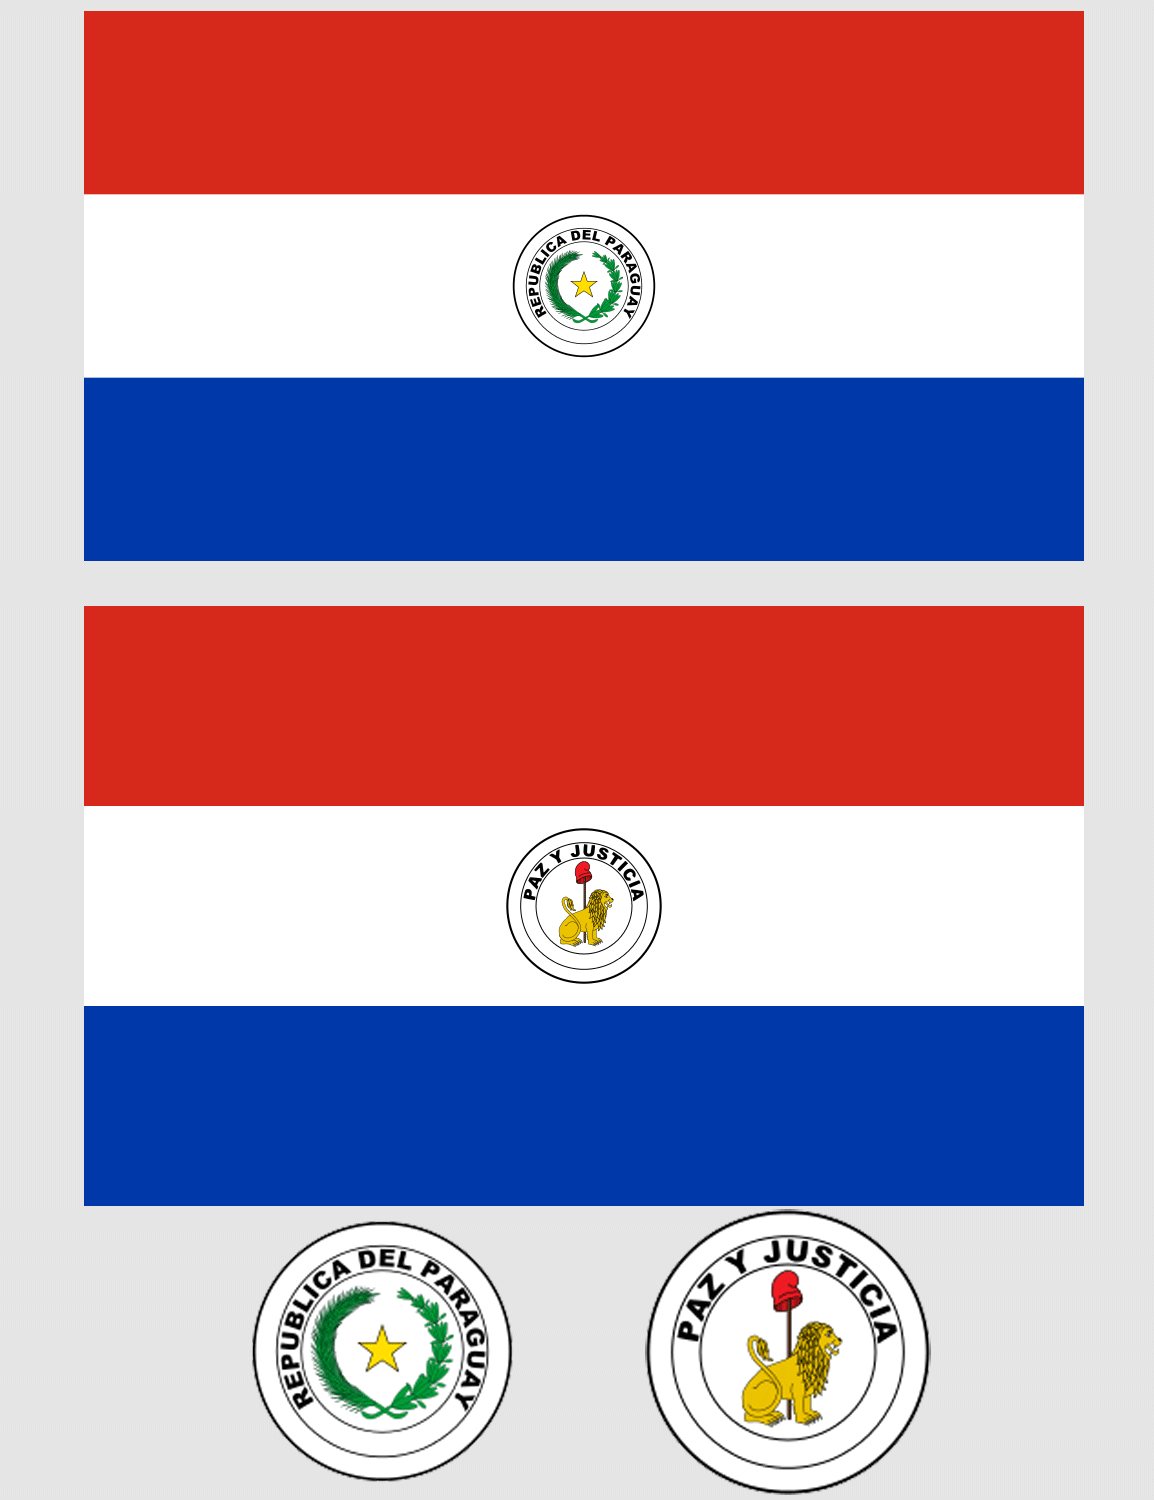 Fakta: Paraguays flag er ikke ens på begge sider